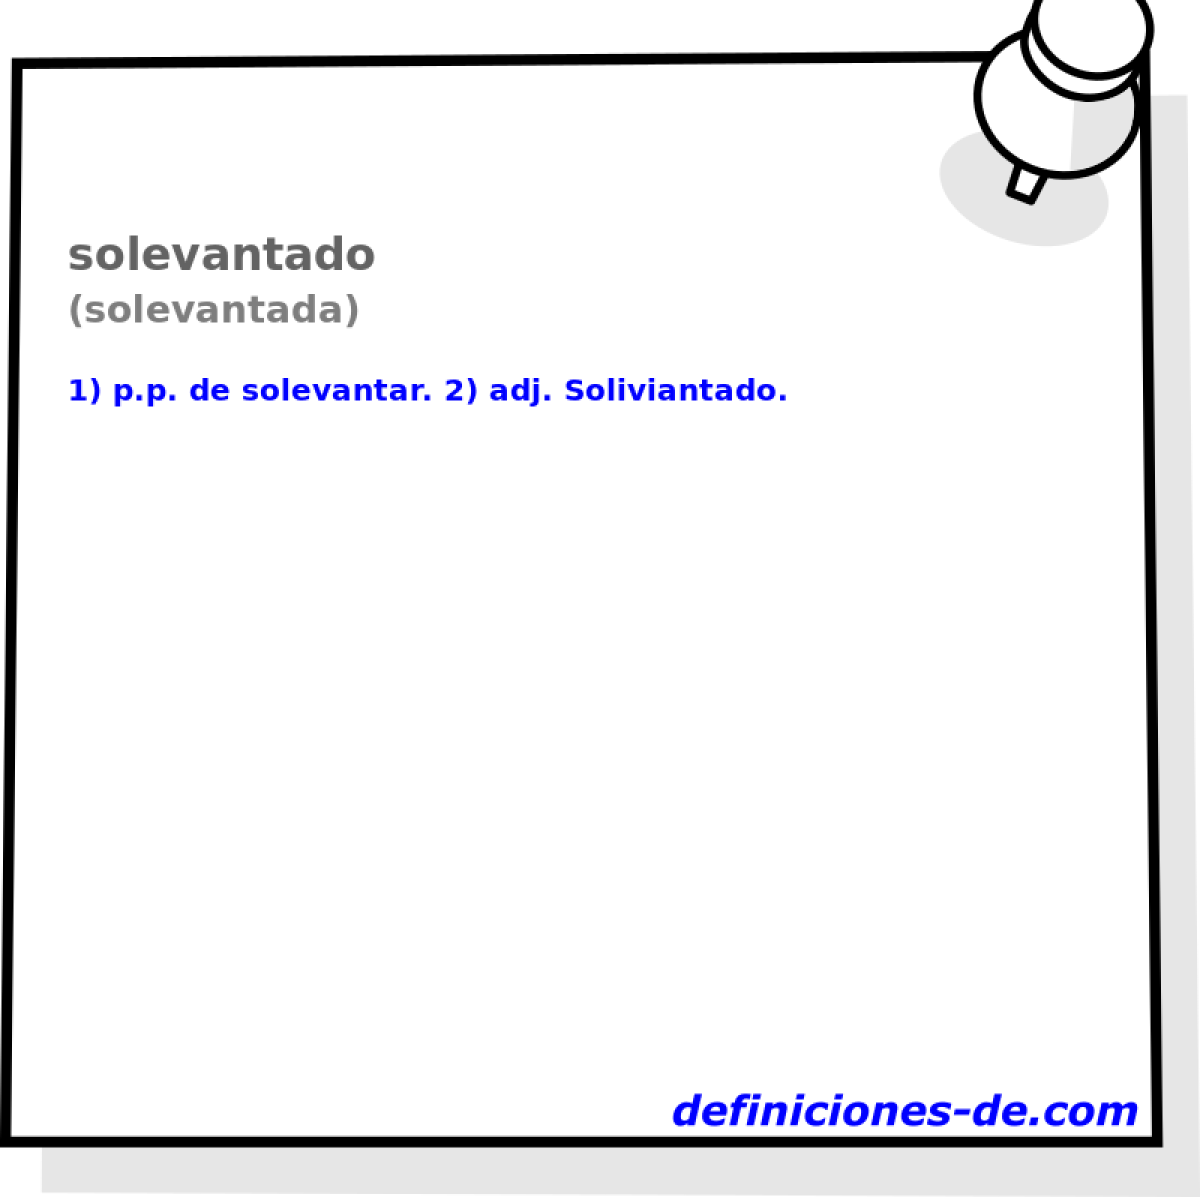 solevantado (solevantada)